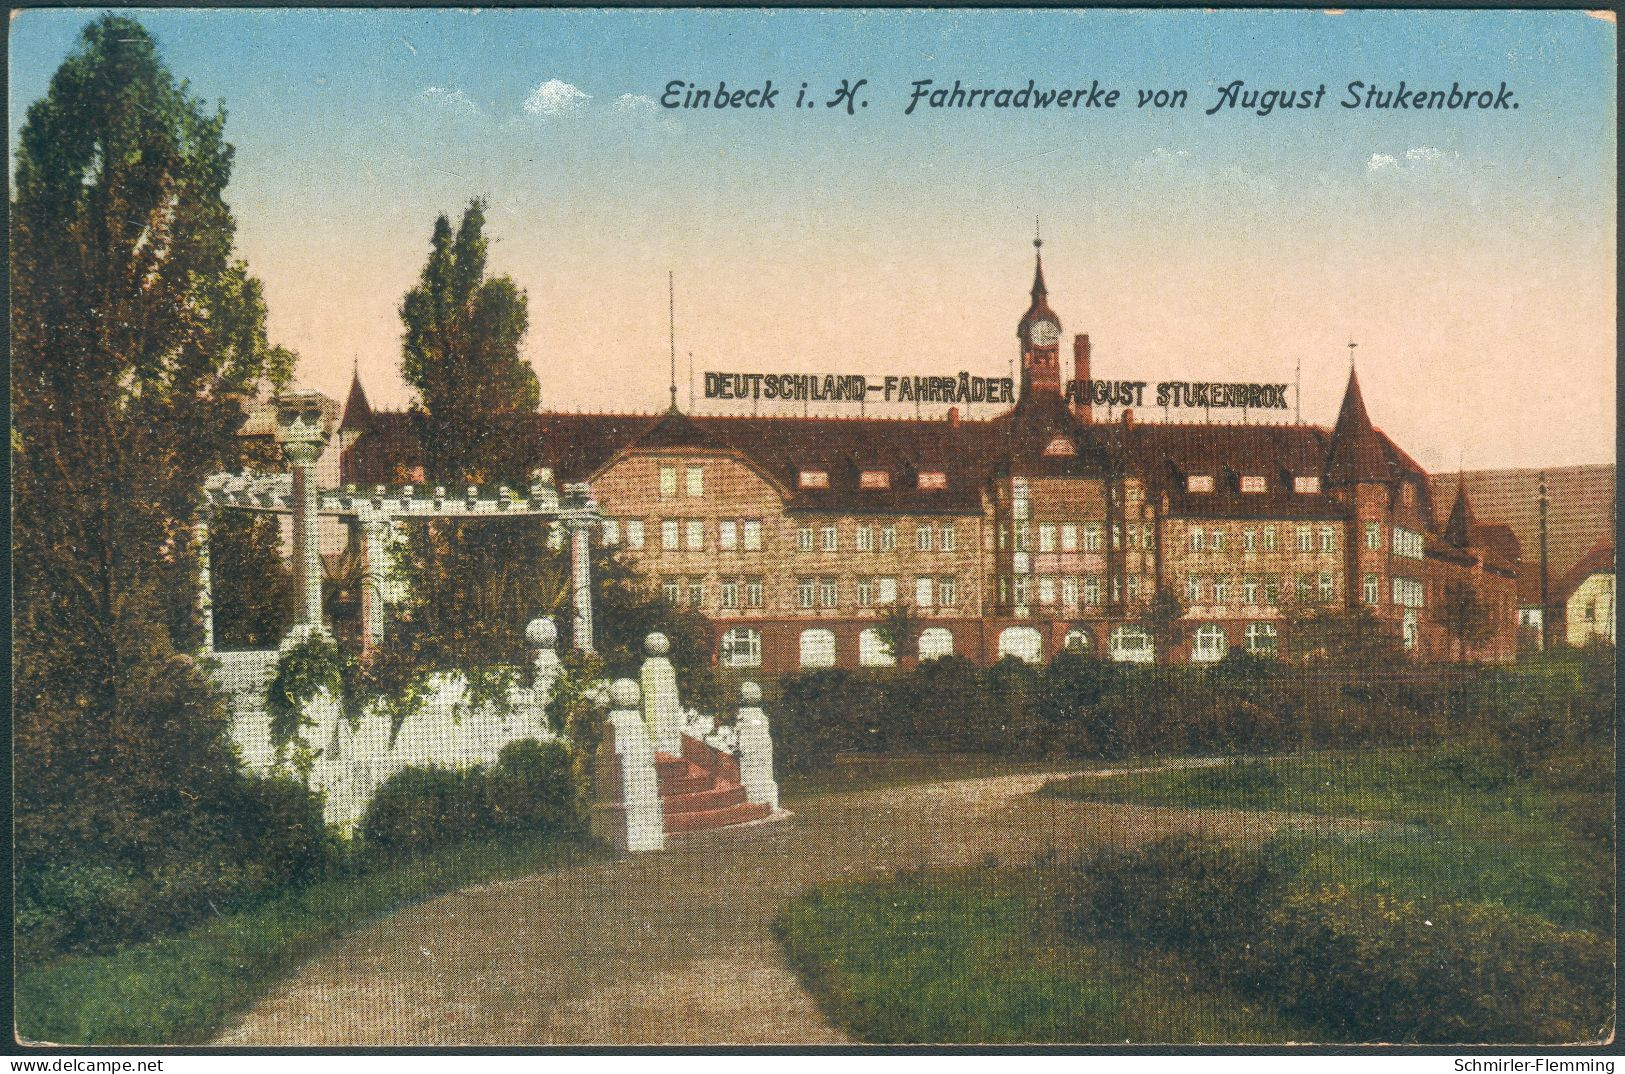 Postkarte Einbeck I. H. Fahrradwerke Von August Stukenbrok, 1906 Farbig, Ungelaufen, II - Marchands